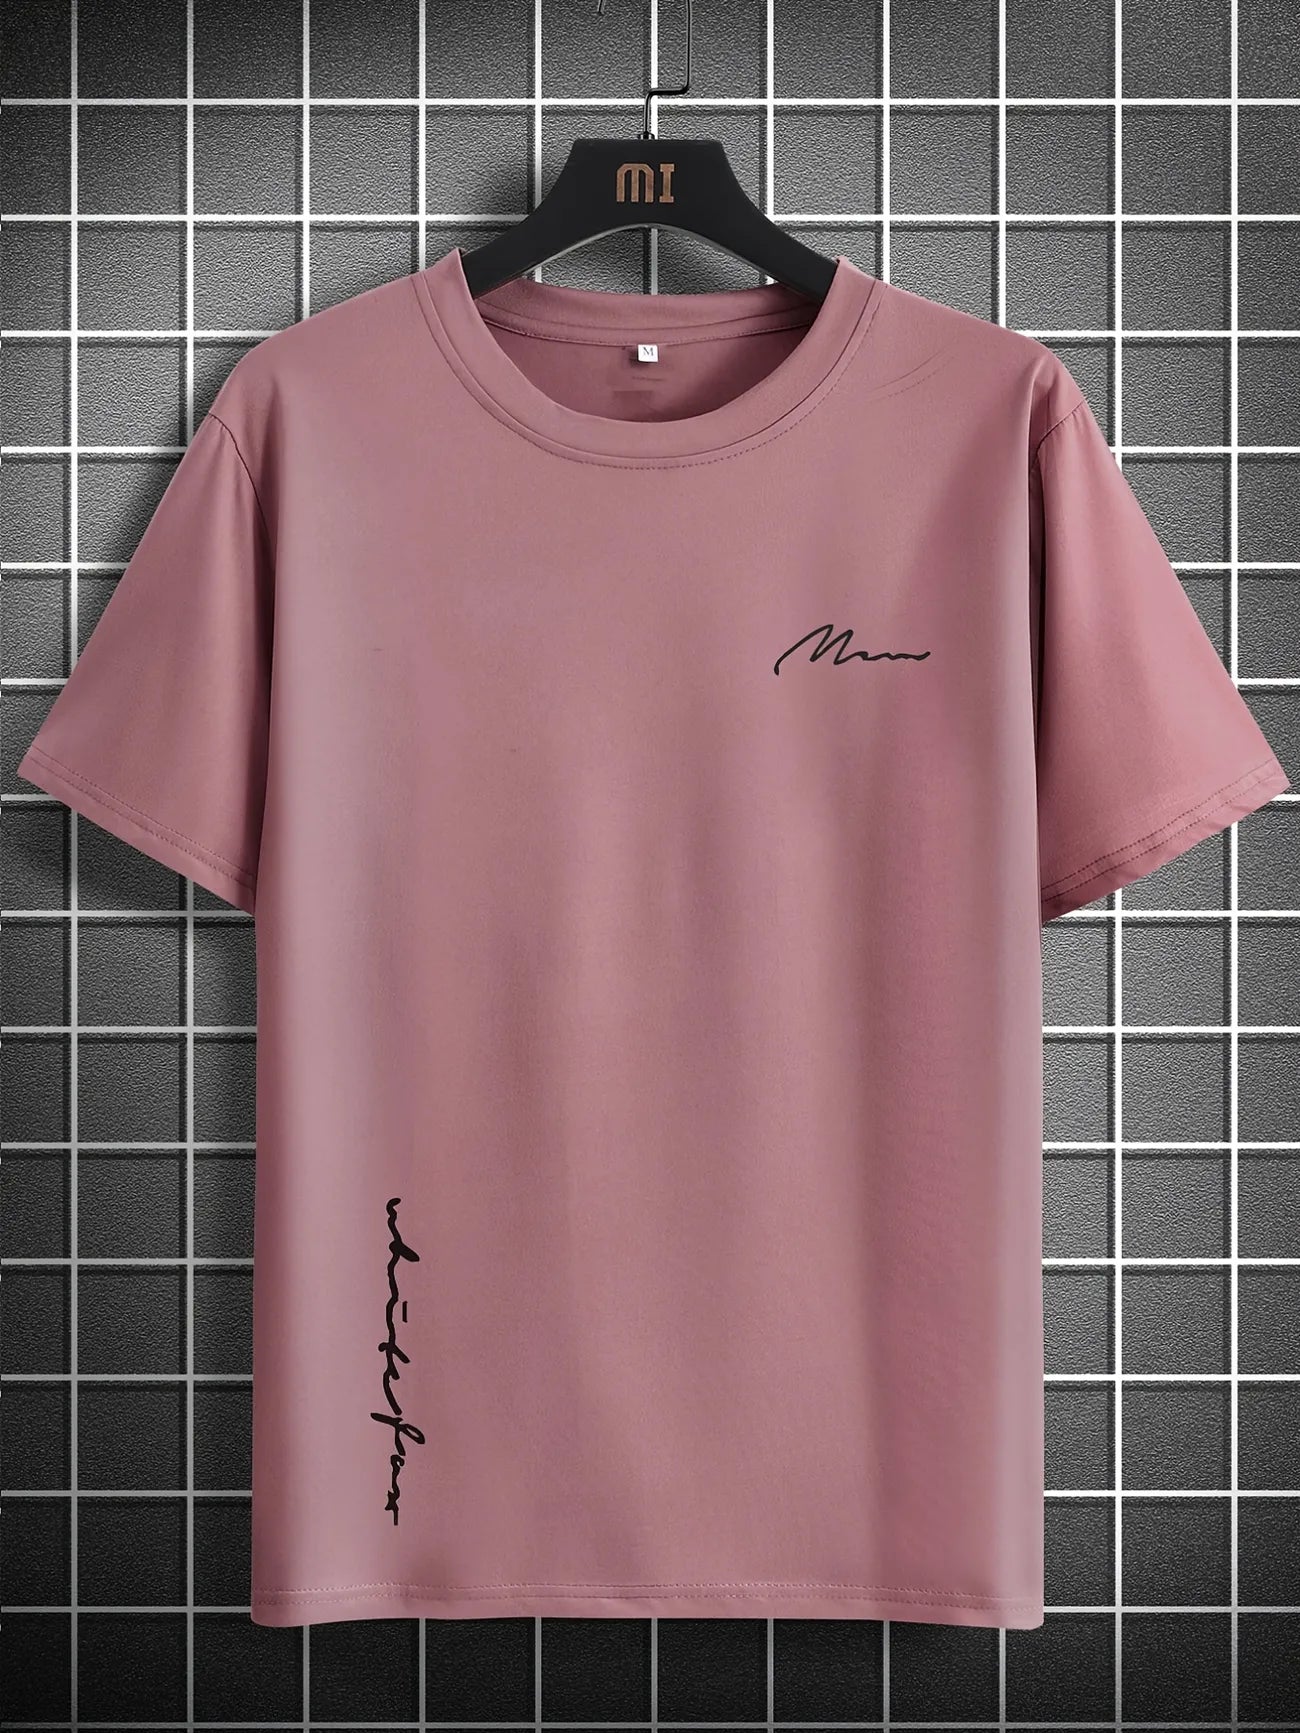 Mens Cotton Sticker Printed T-Shirt TTMPS98 - Pink